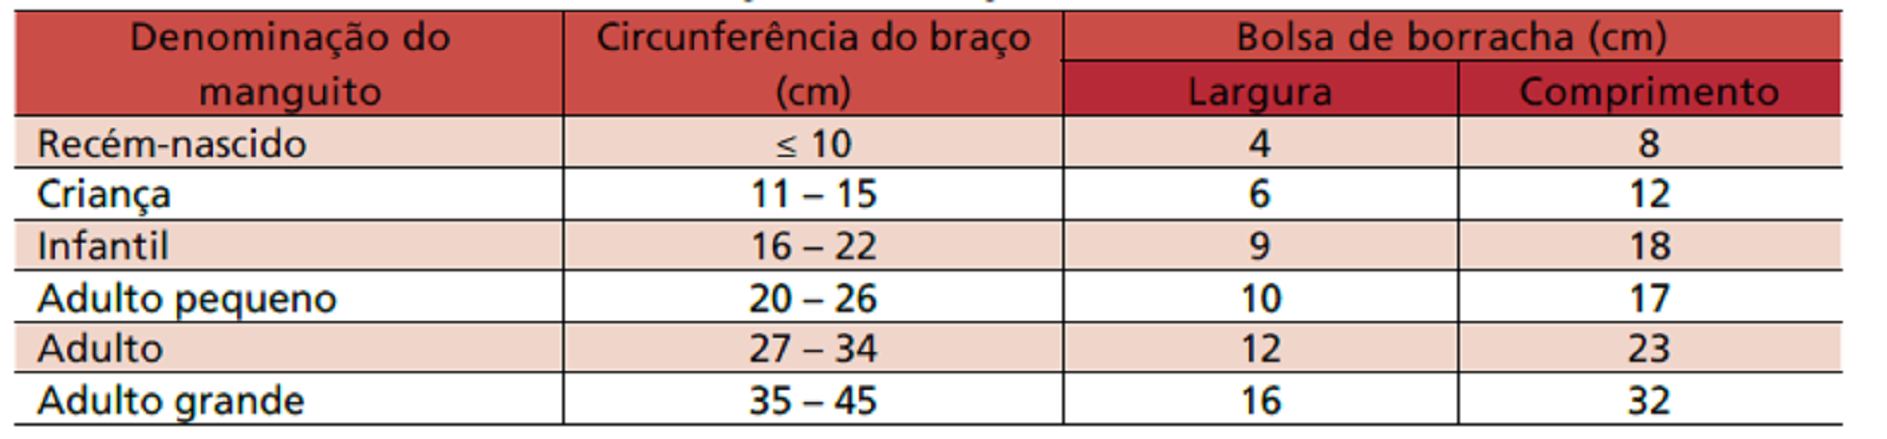 - V Diretrizes Brasileiras de Hipertensão Arterial. Arq. Bras. Cardiol., São Paulo, v. 89, n. 3, p. 24-e79, Set. 2007. Disponível em: <http://www.scielo.br/scielo.php?